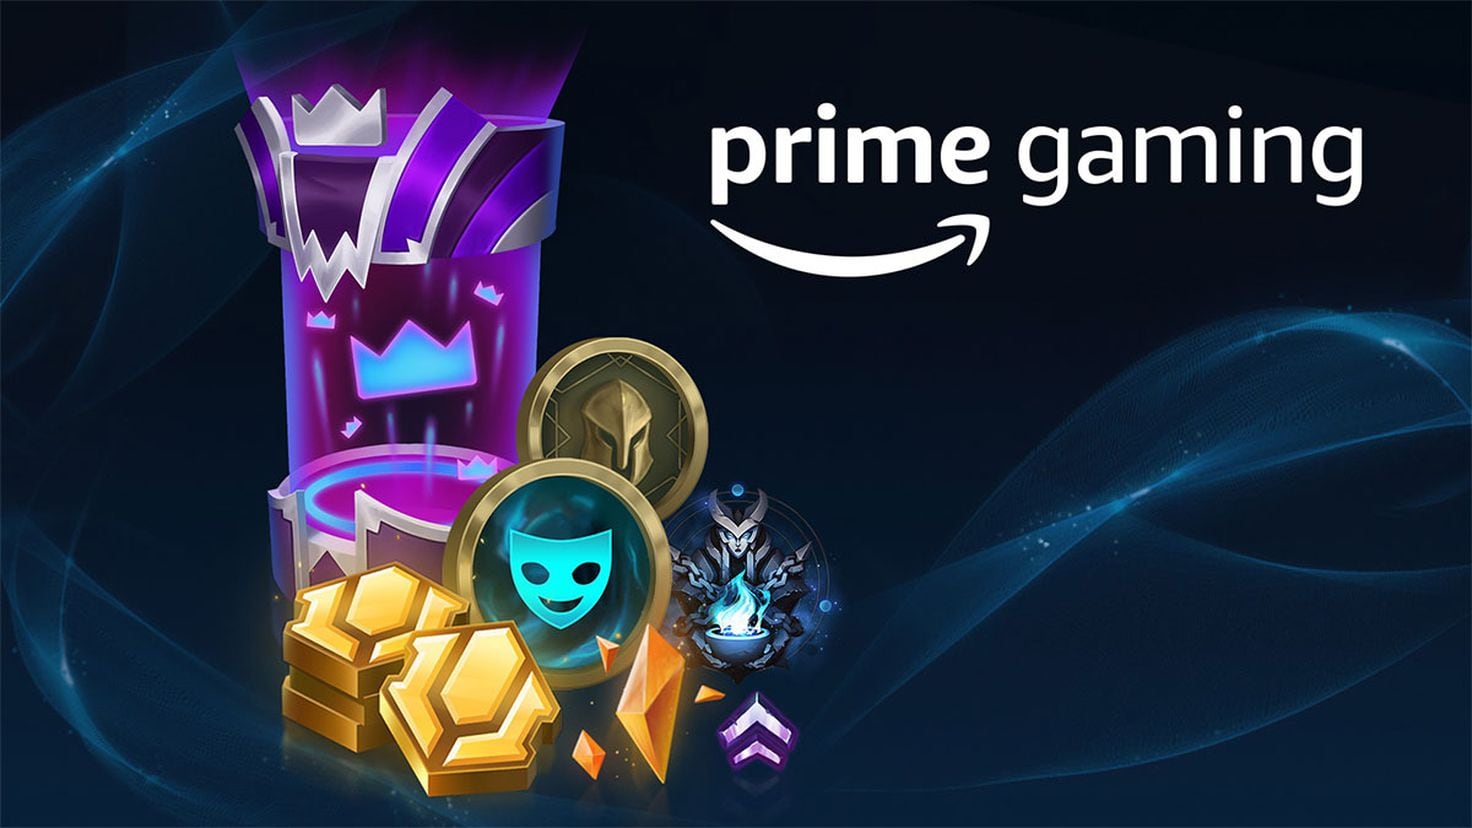 December Prime Gaming Loot - News